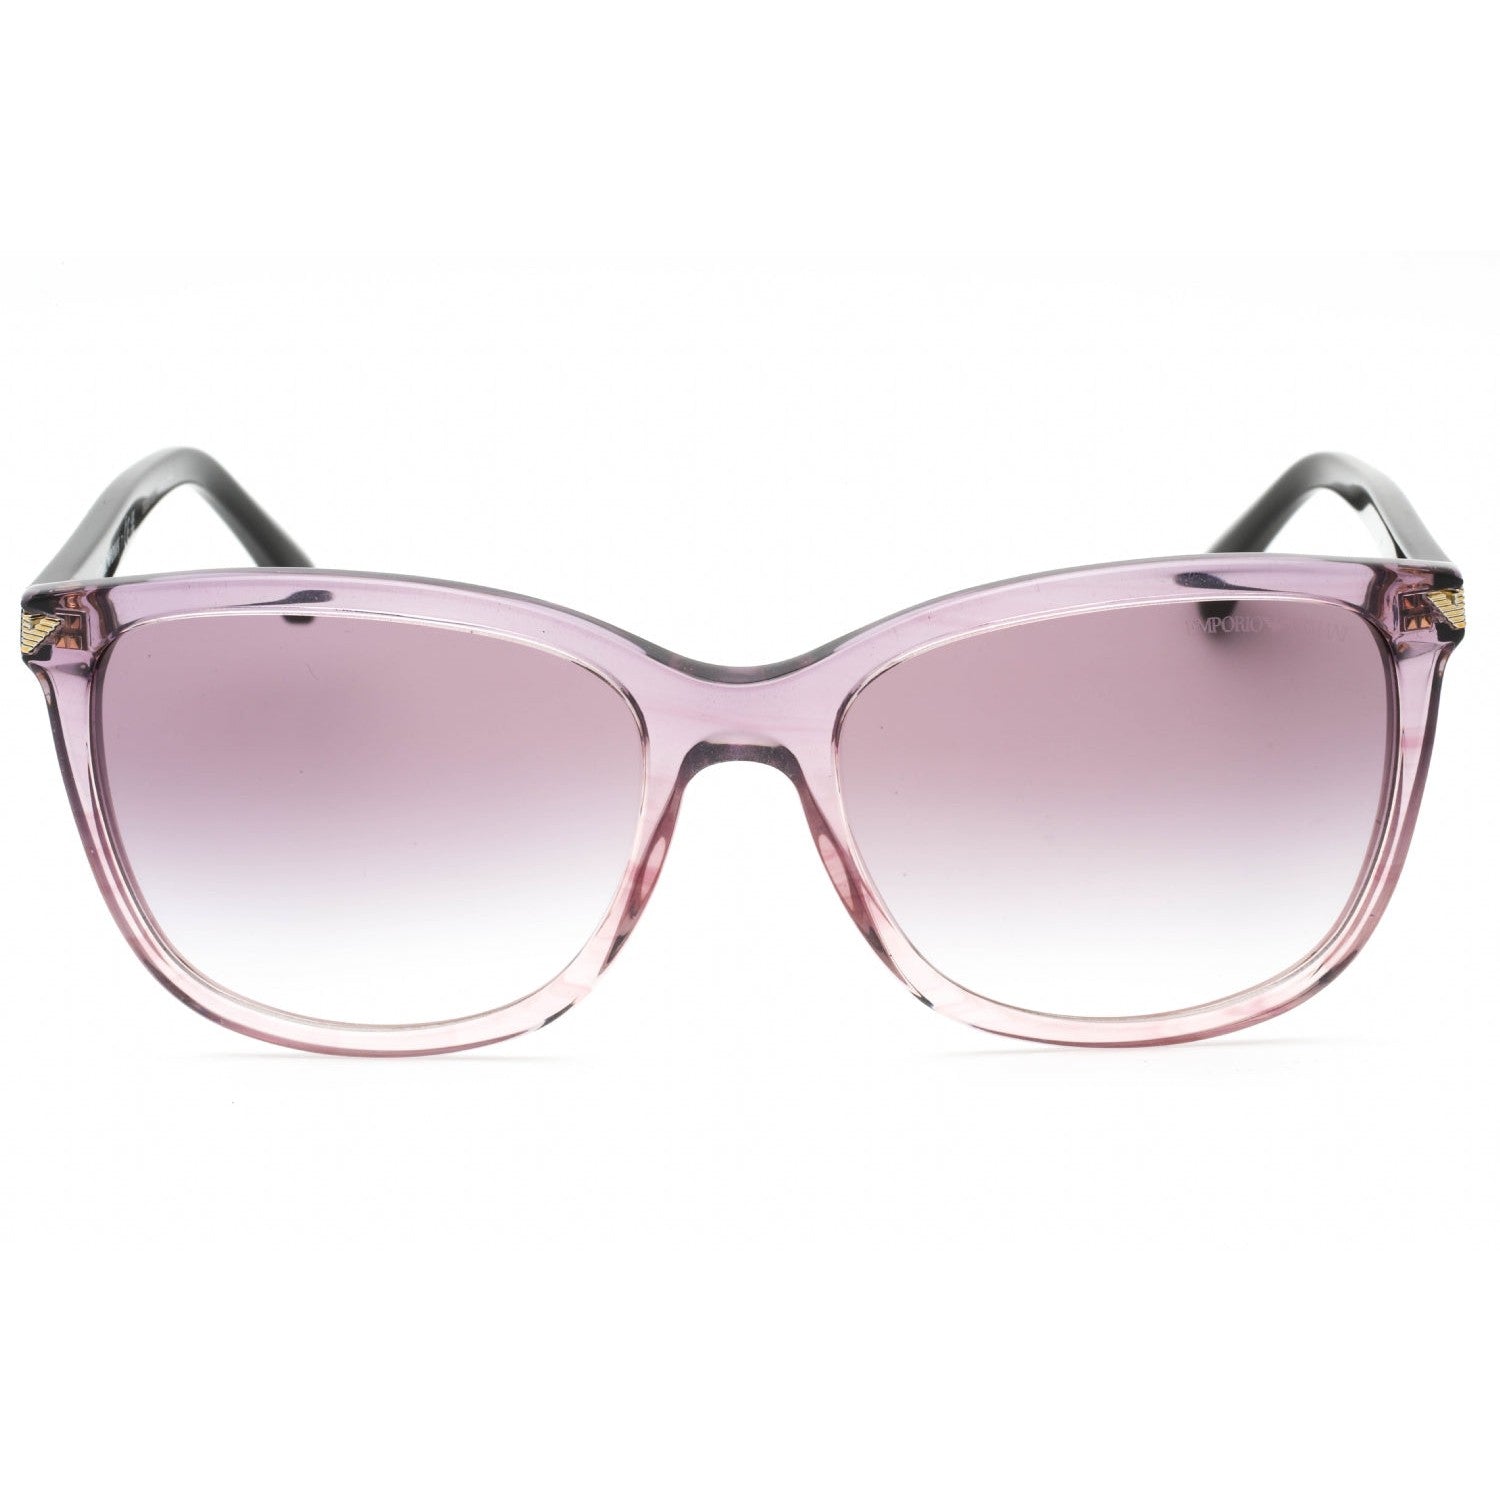 Emporio Armani 0EA4060 Sunglasses Transparent Gradient Striped Purple ...